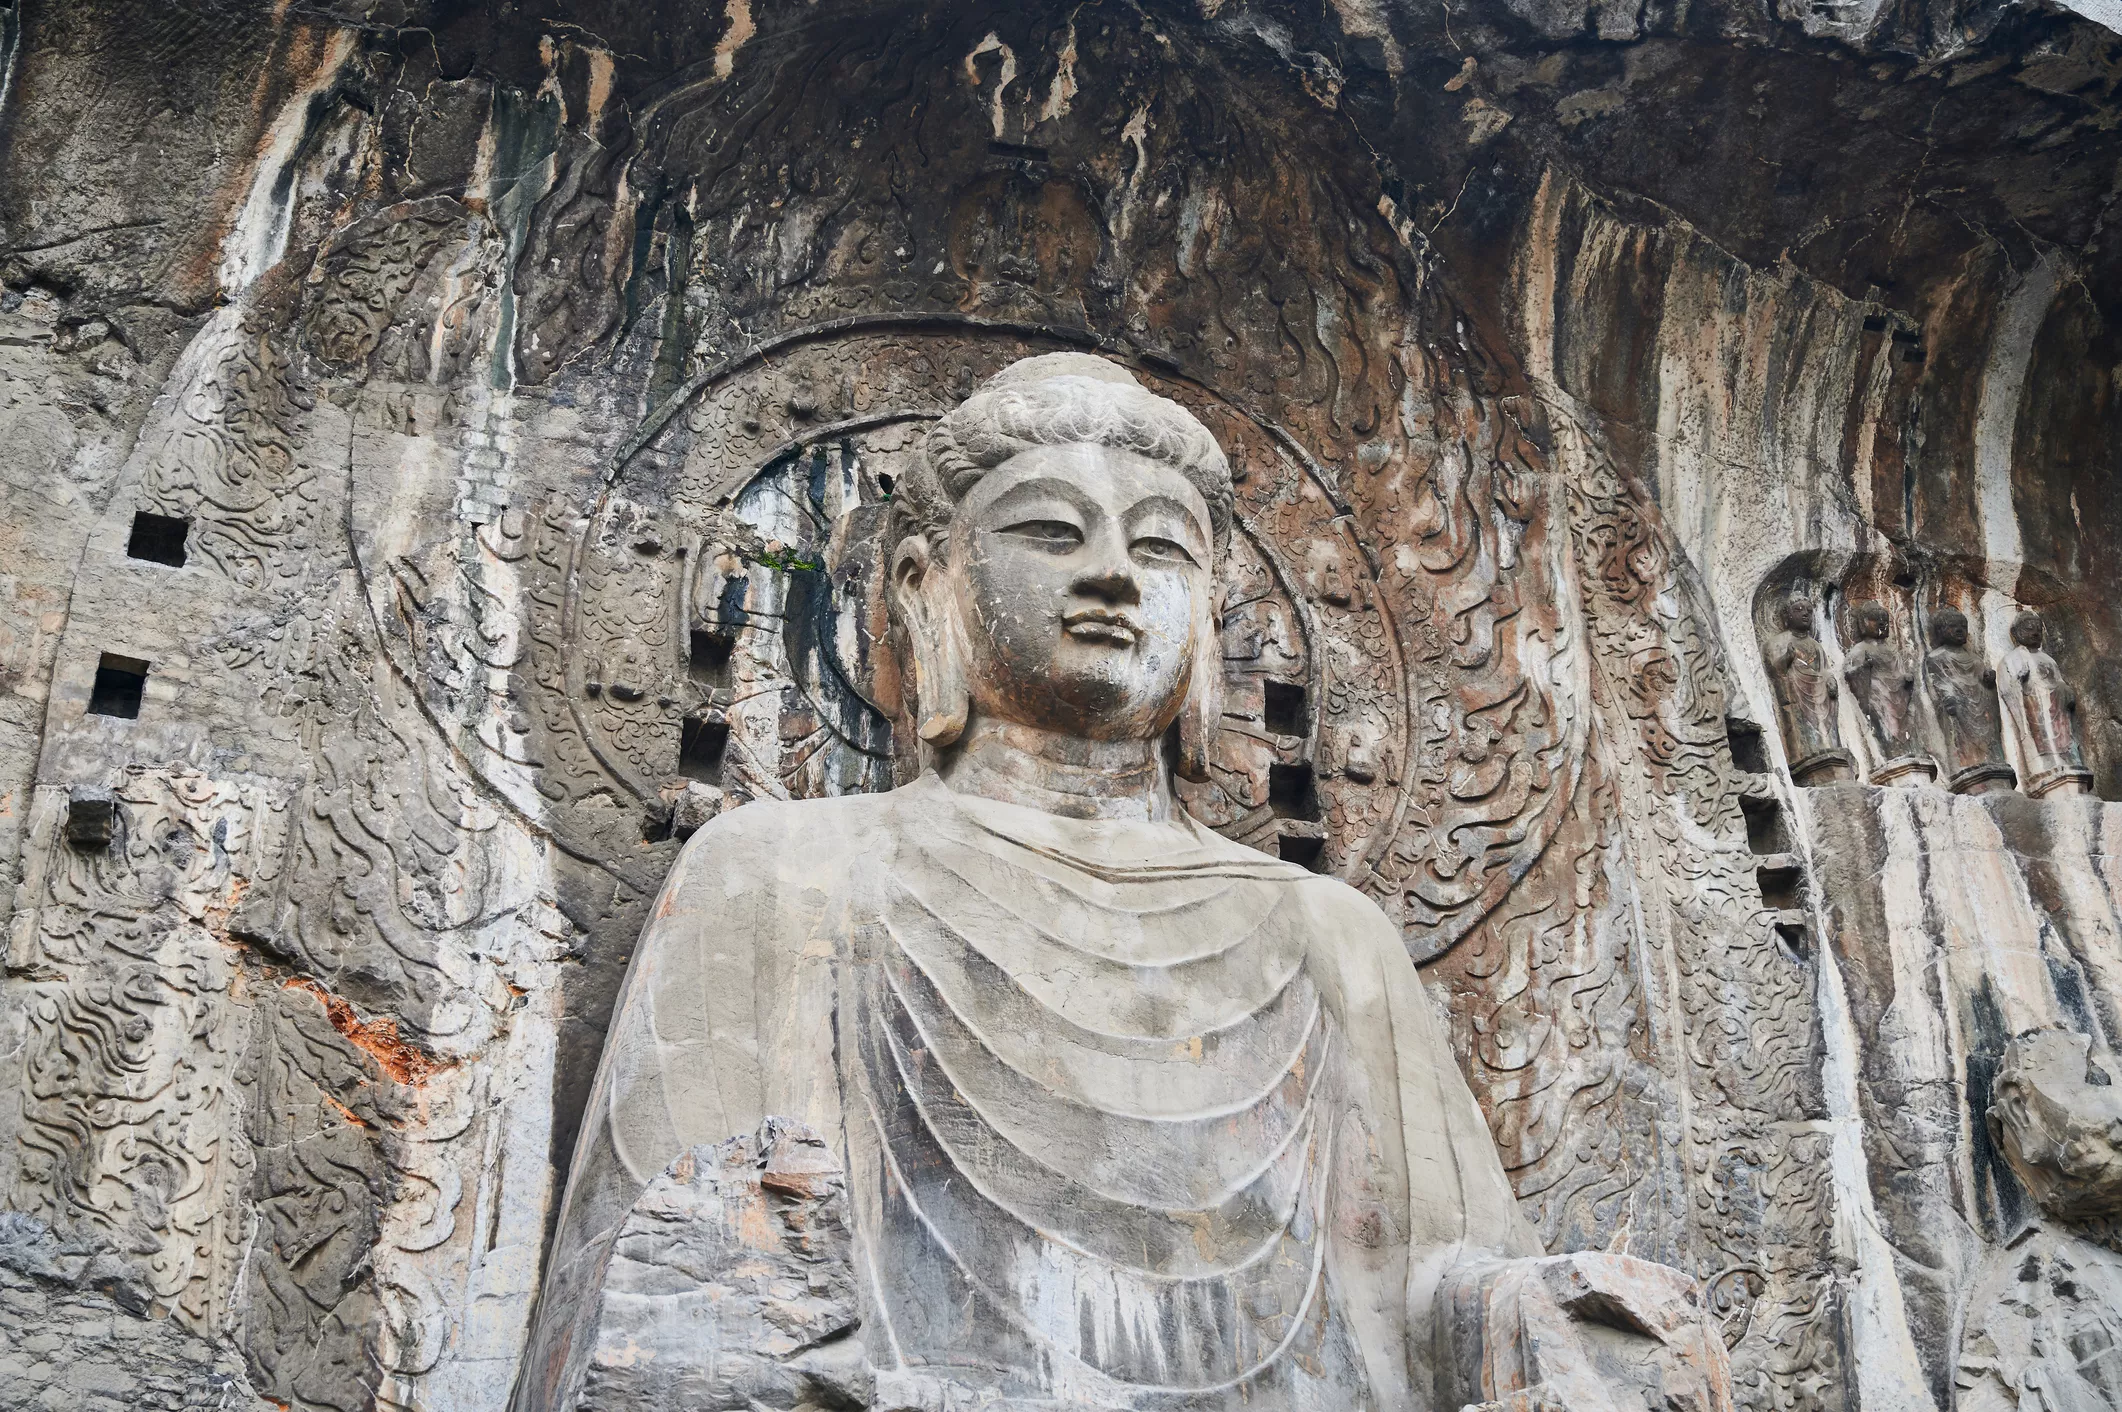 Estàtua situada a les grutes de Longmen, suposadament inspirada en la imatge de Wu Zetian